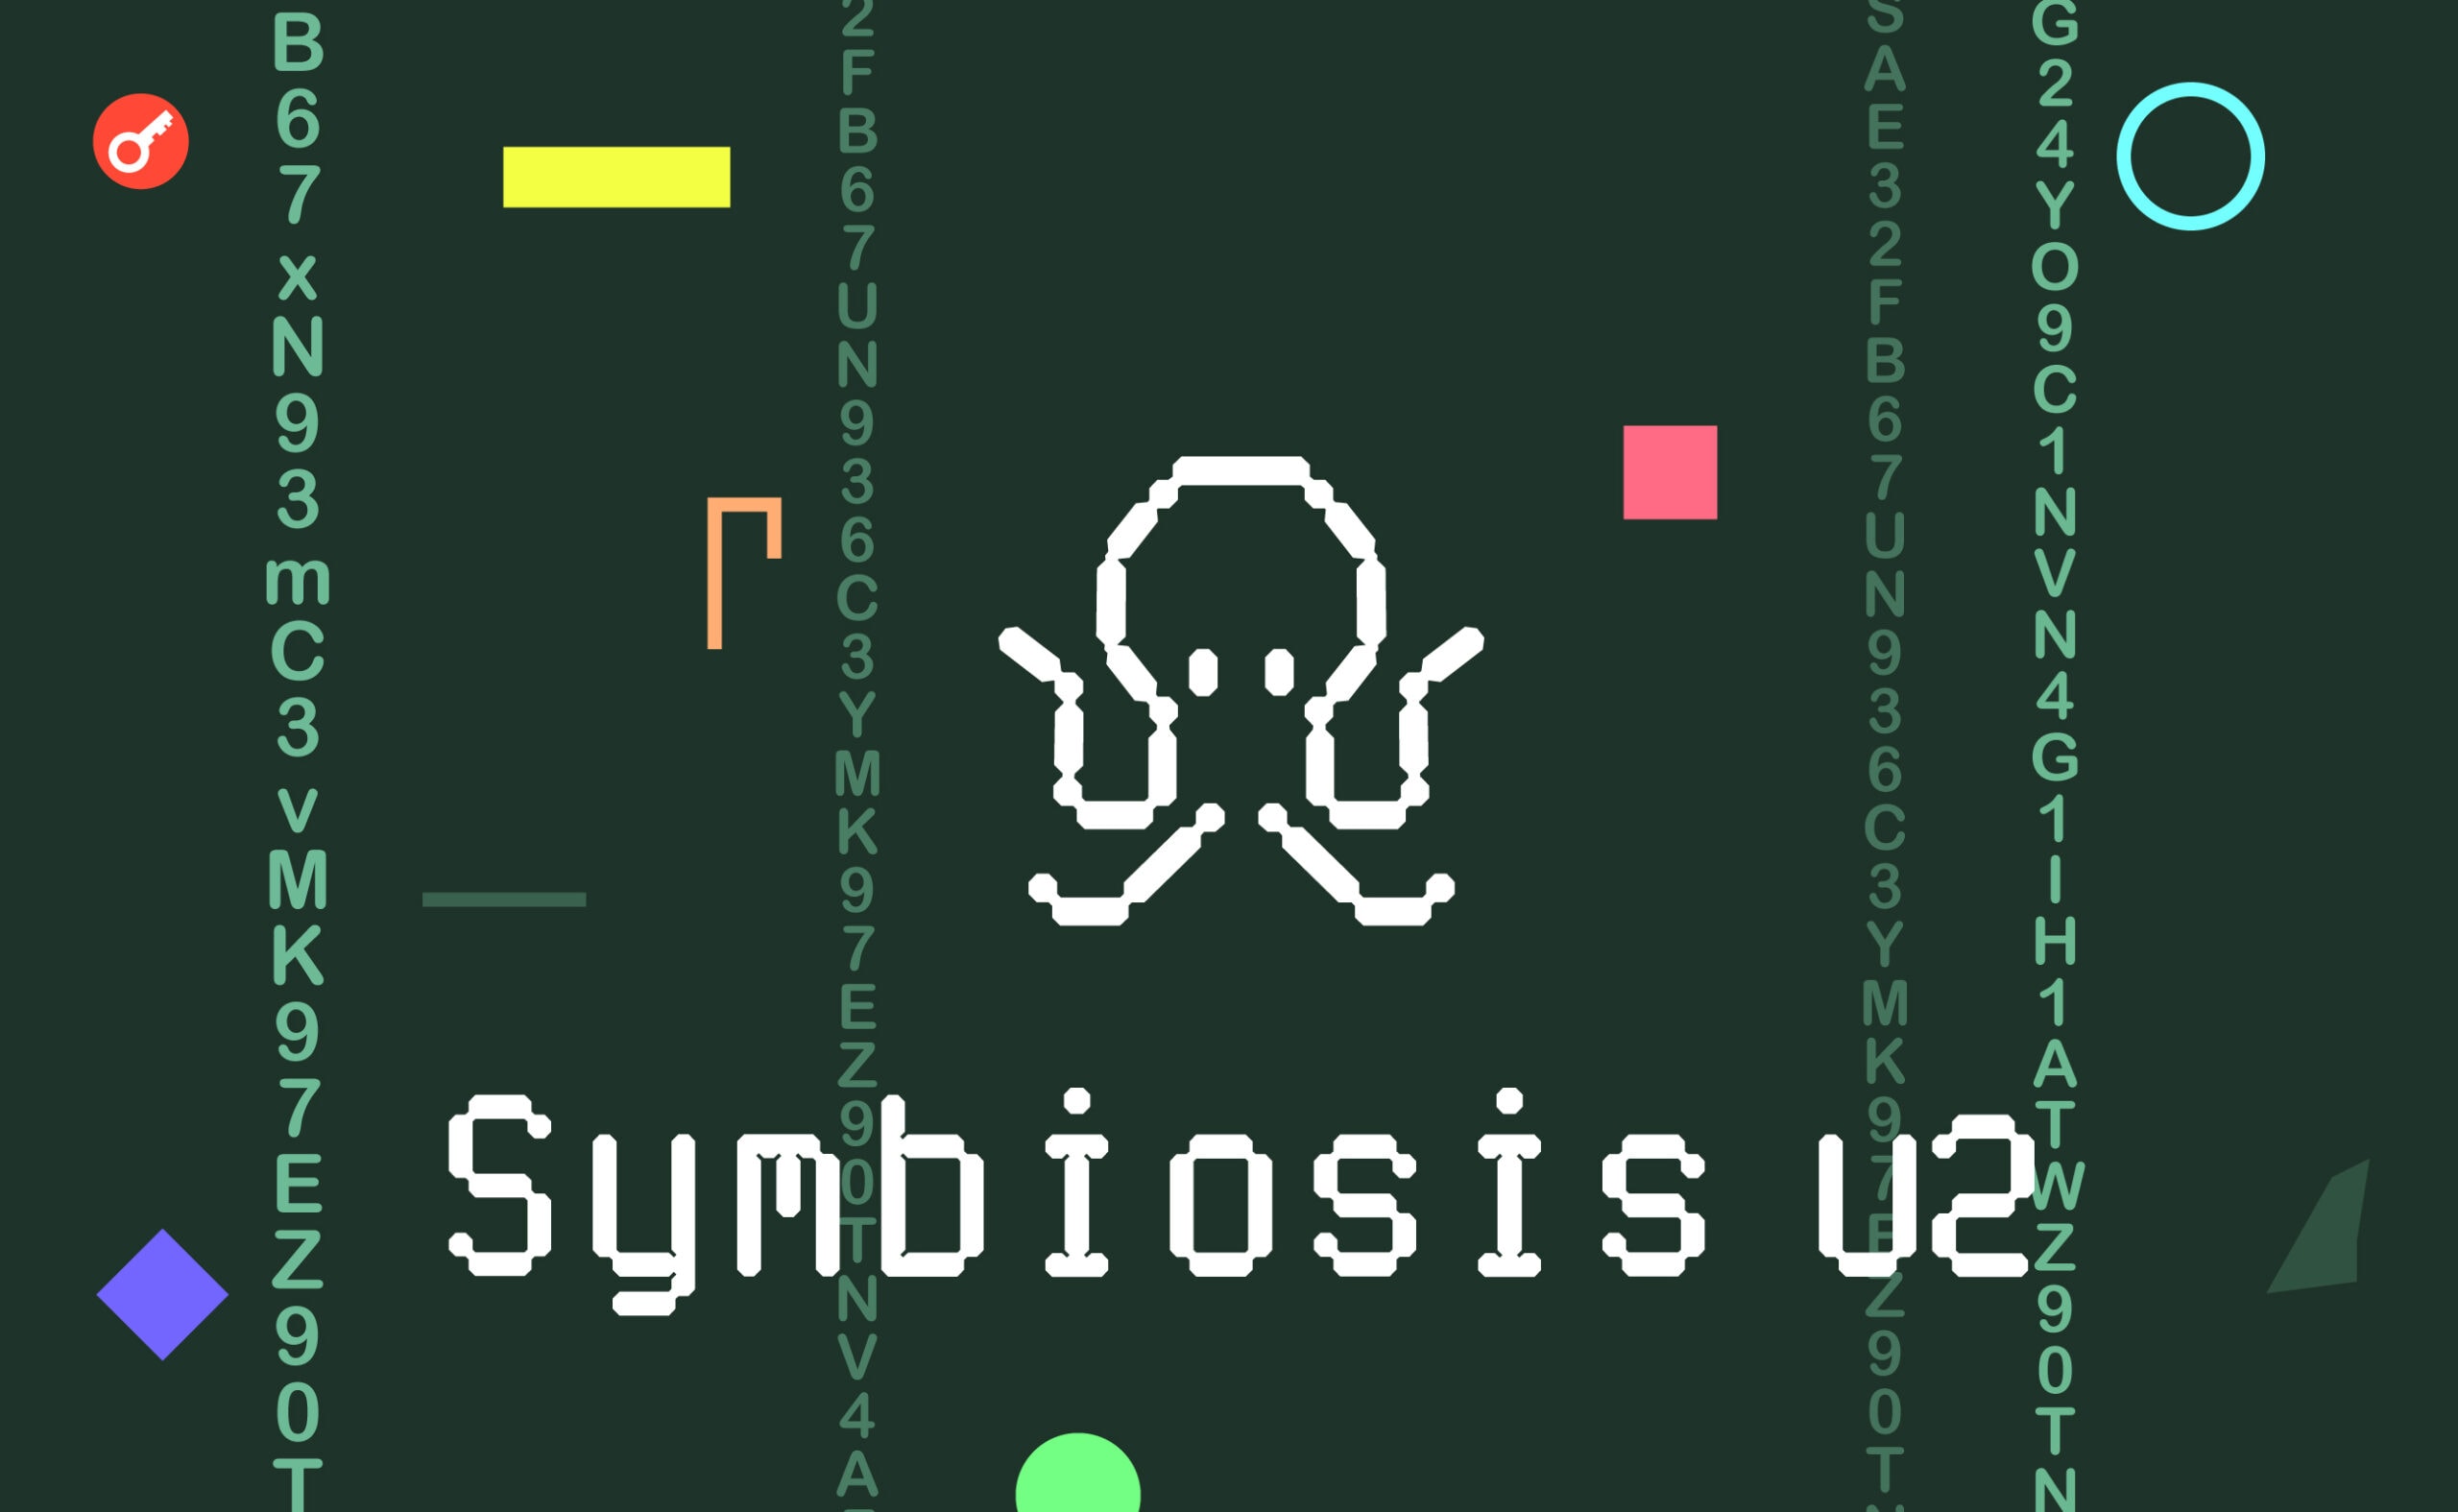 Symbiosis v2: що змінилося і як використовувати? Головний колаж статті.